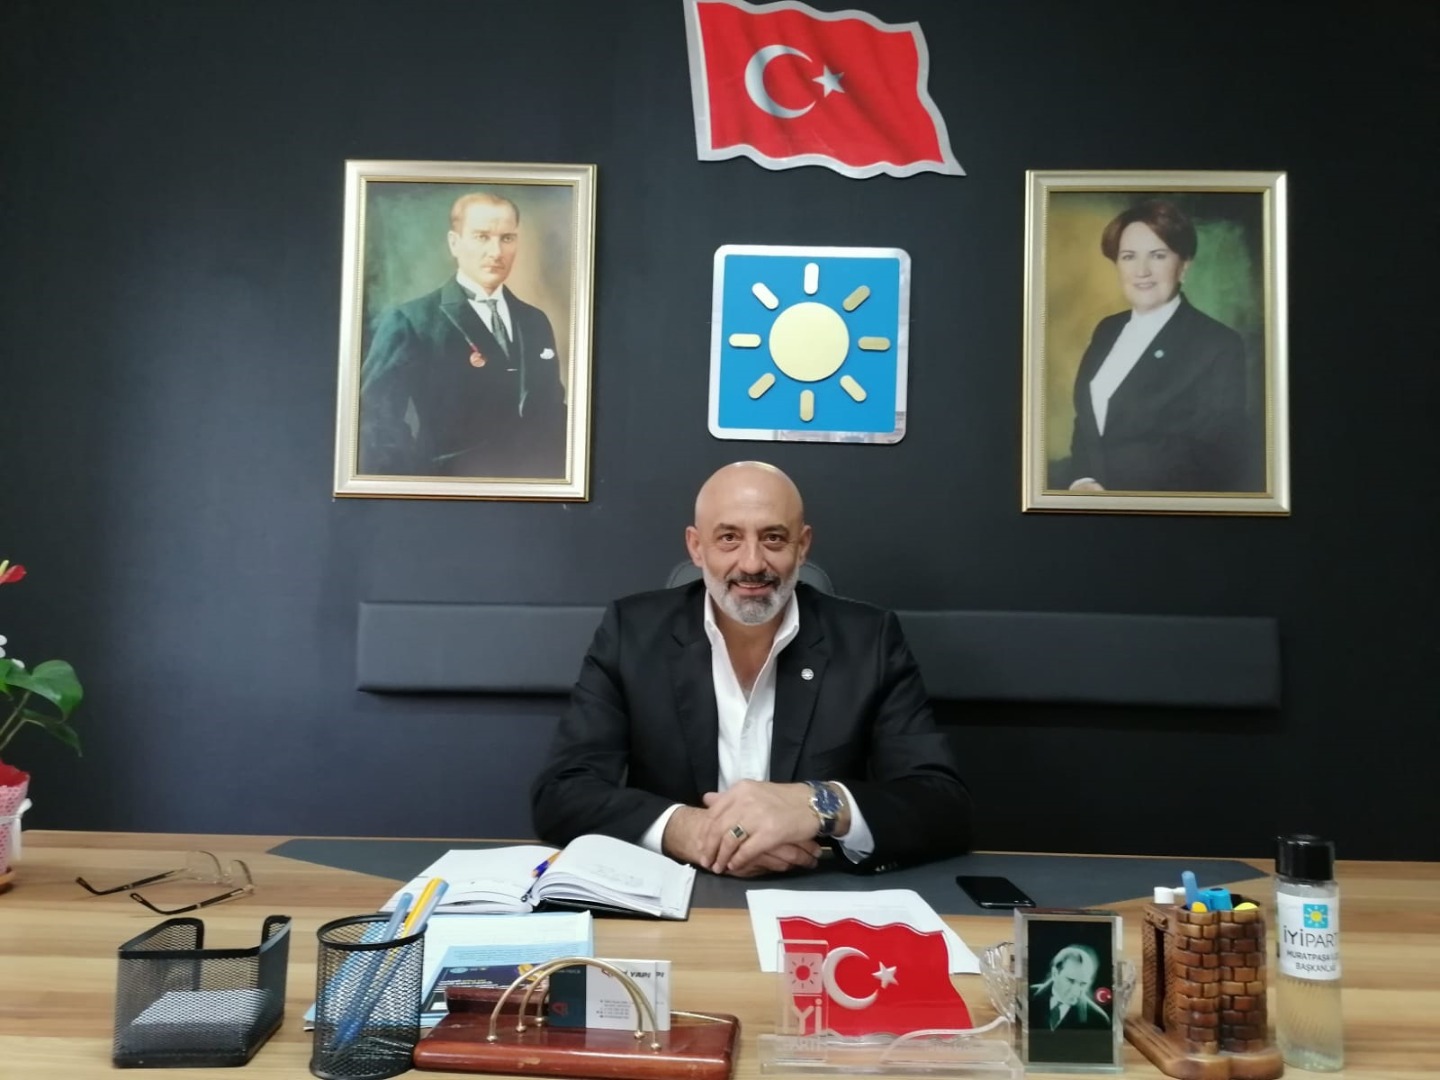 İYİ Parti Muratpaşa İlçe Başkanı Semih Tayfur: Devleti yöneten mahcup değil, sorumlu olur!